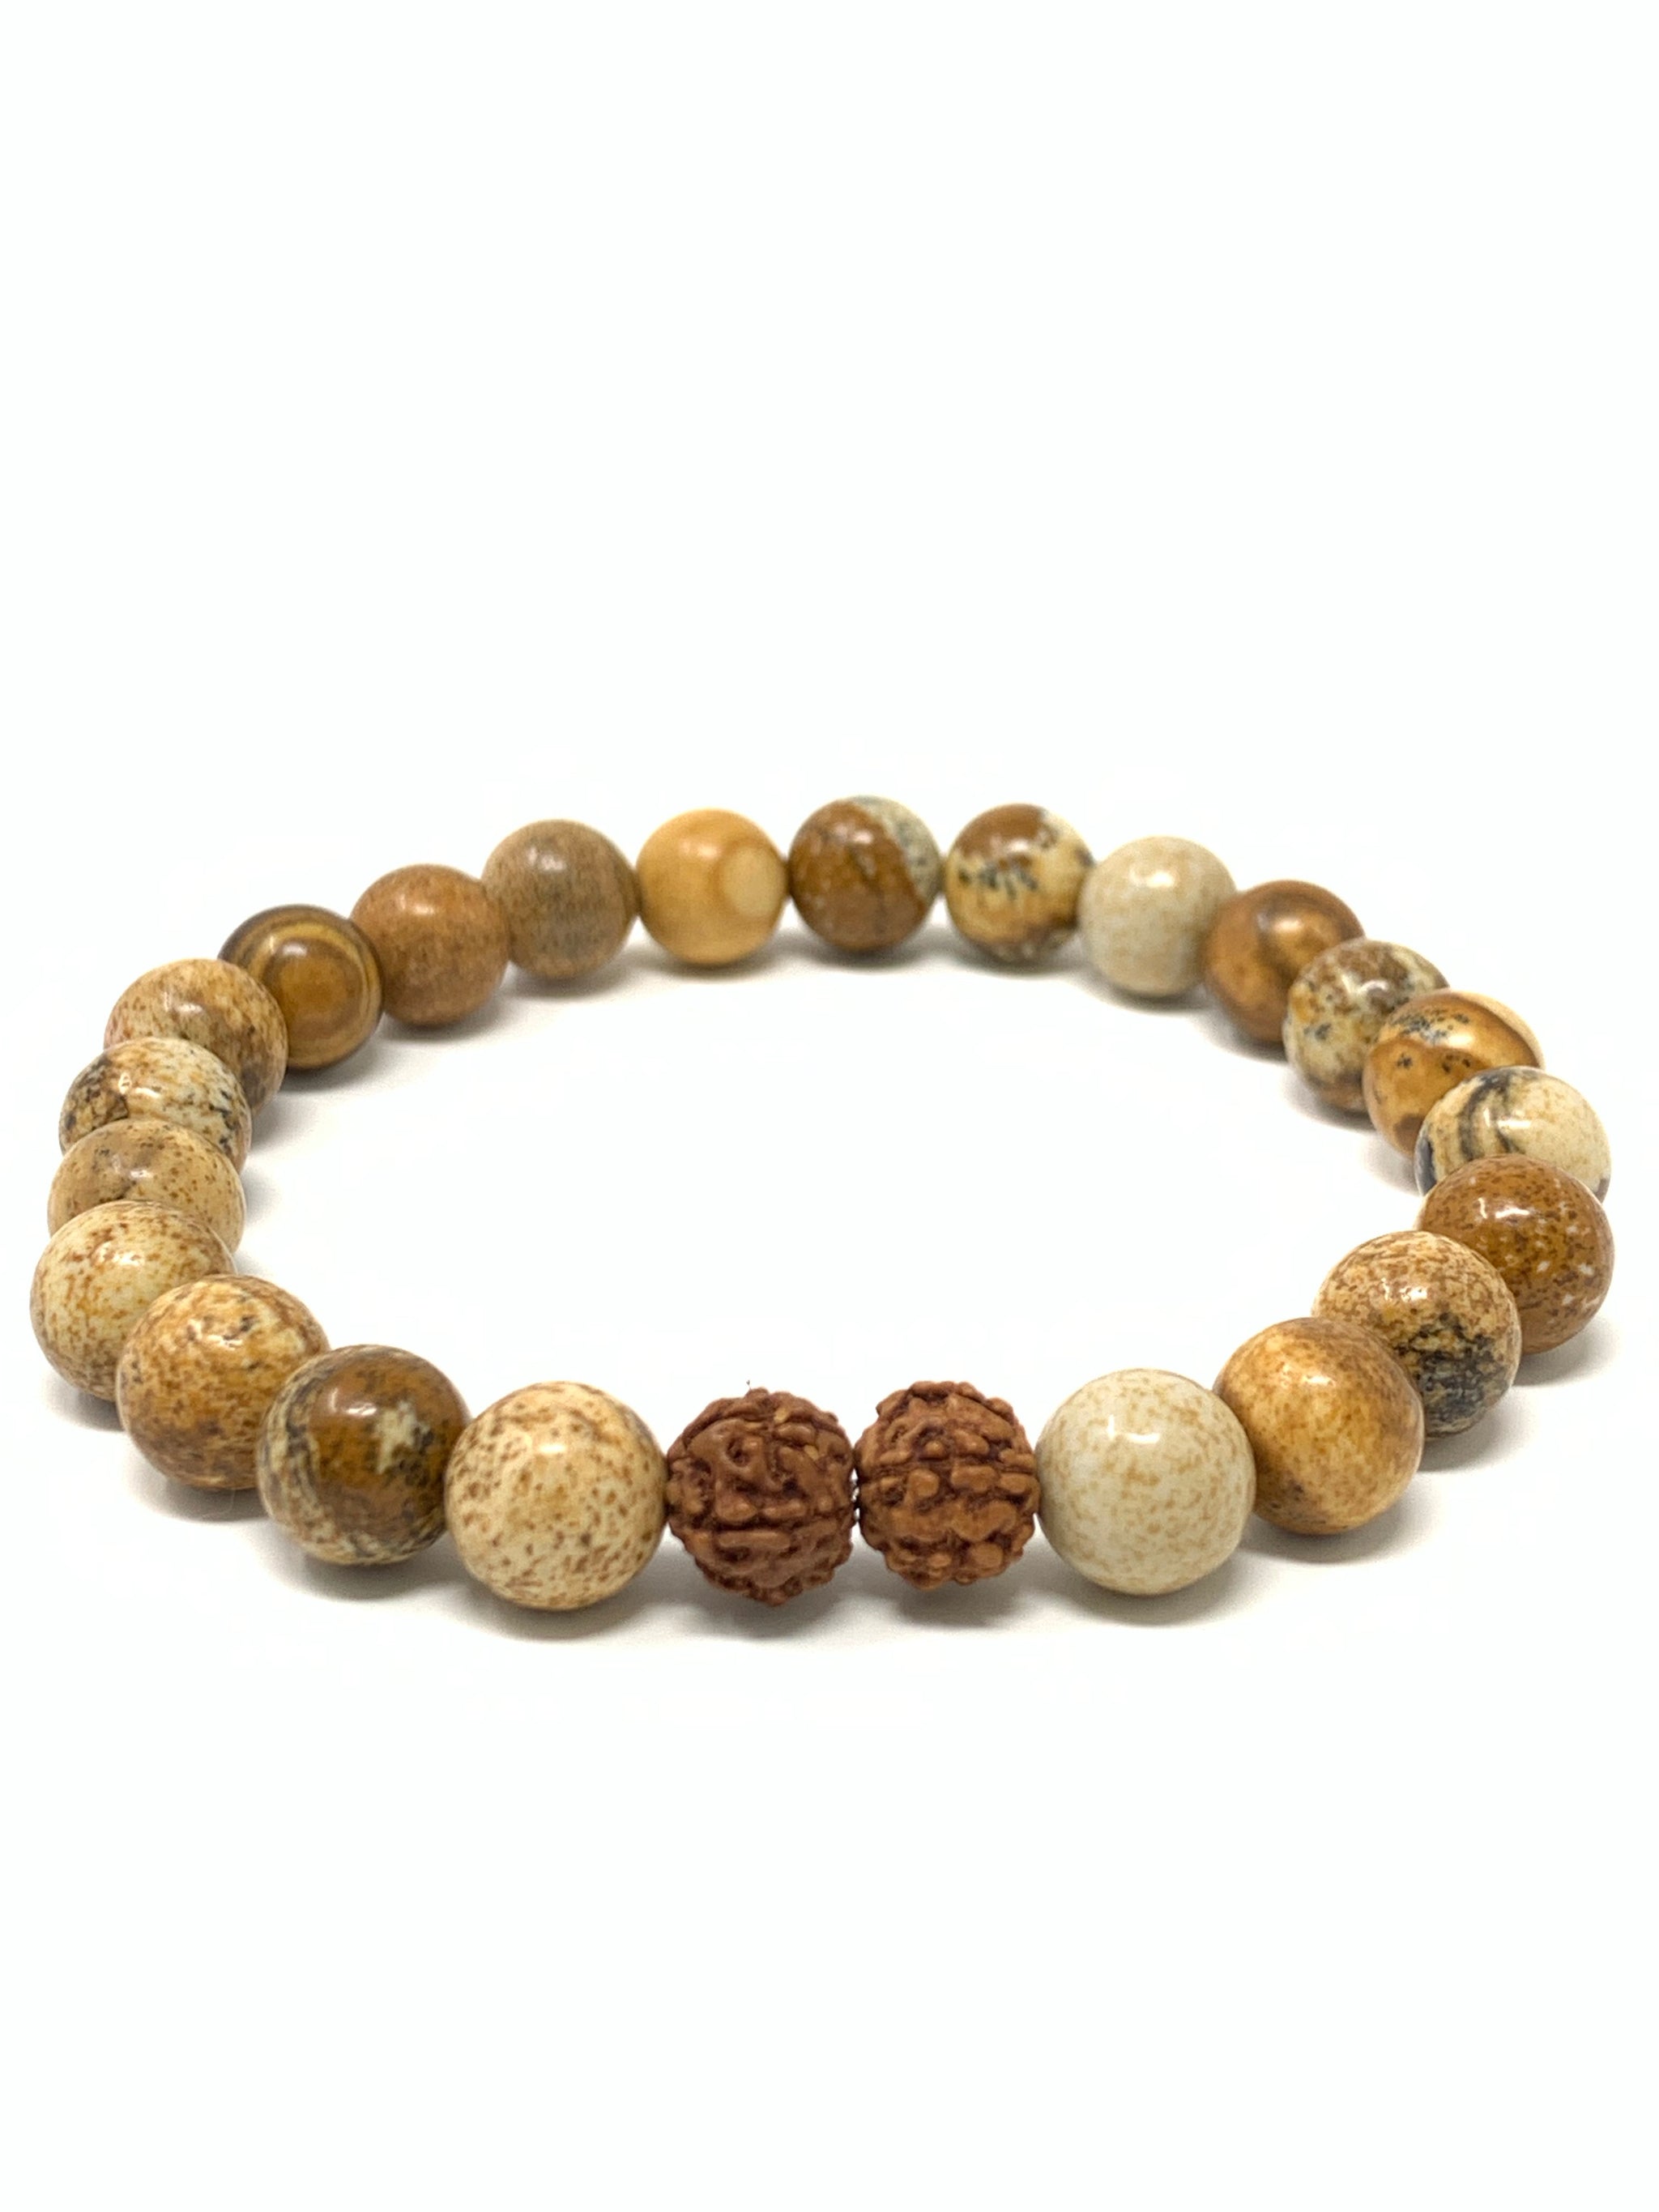 Spiritual Bracelets  Spiritual bracelets, Unique items products